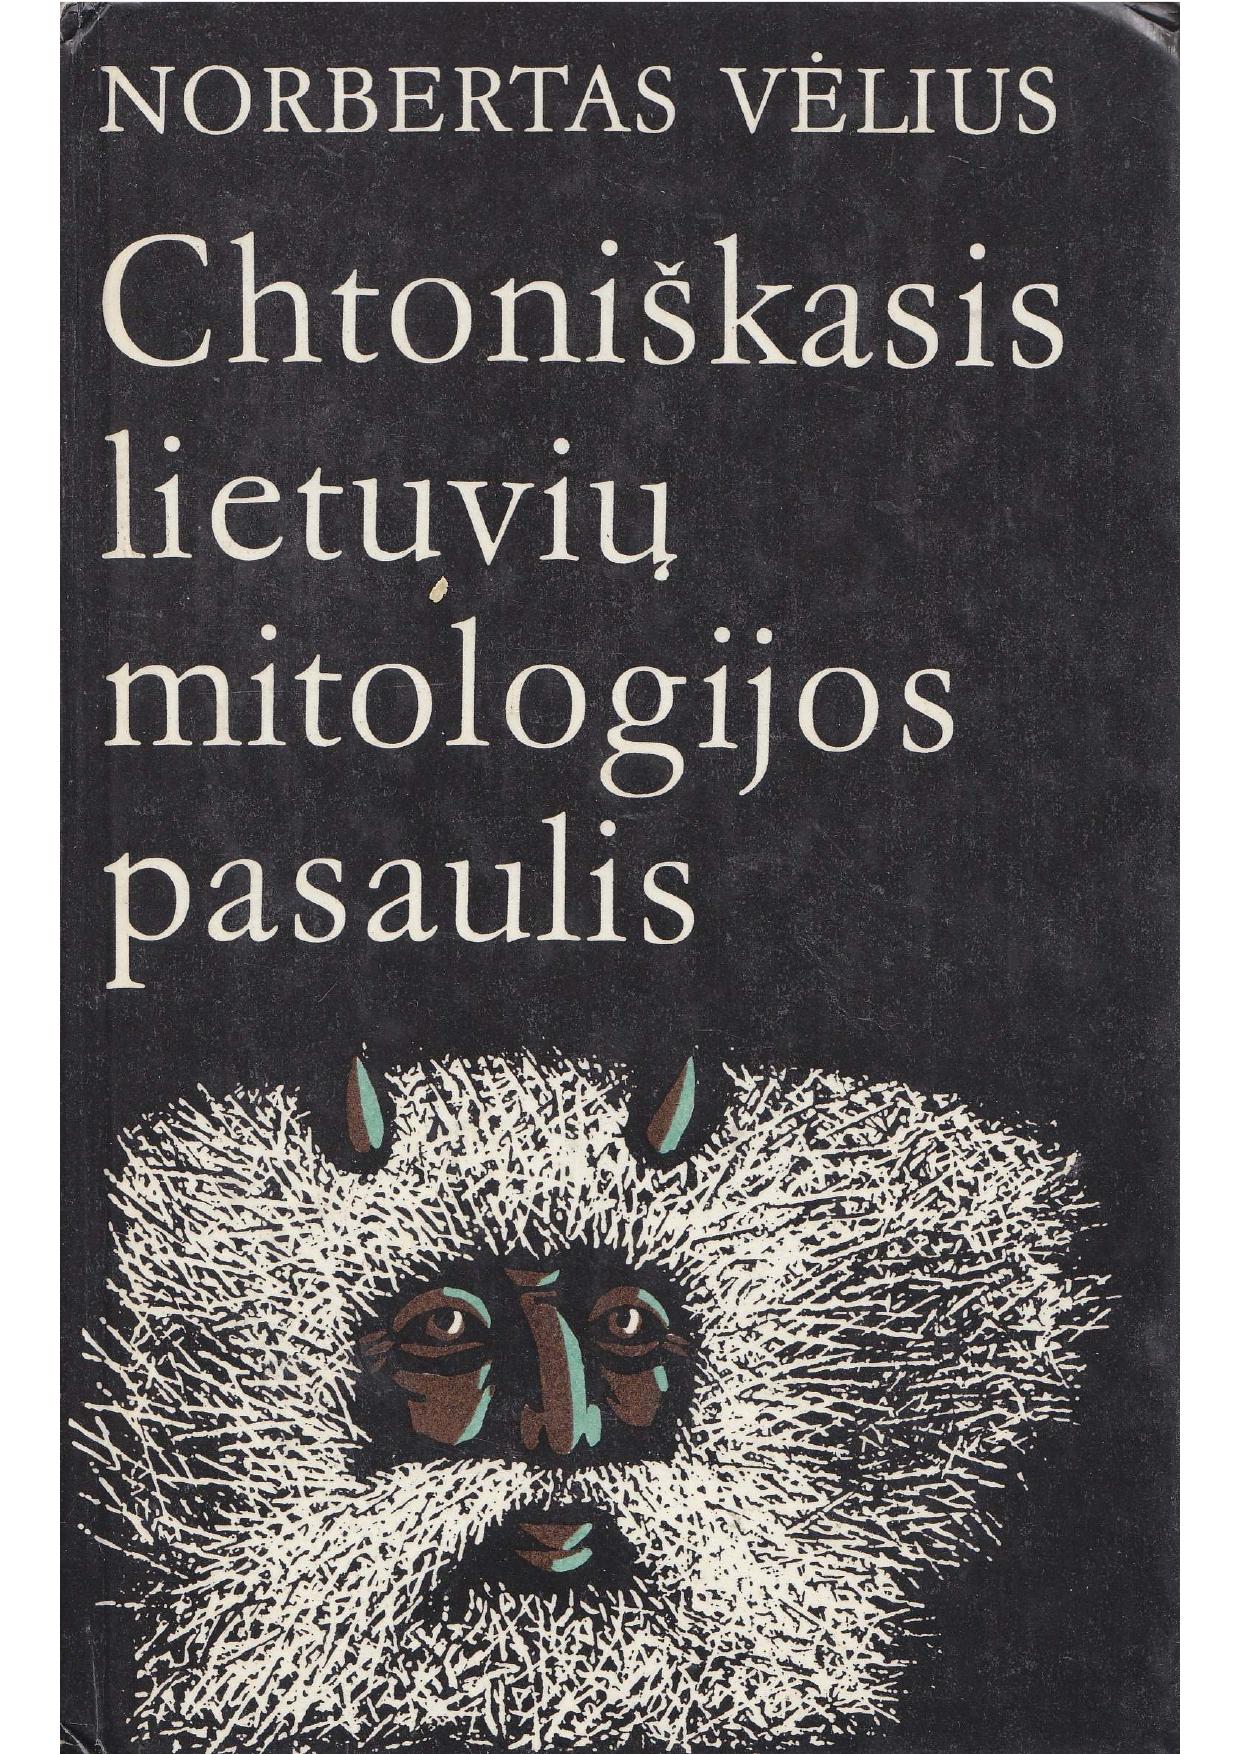 Chtoniškasis lietuvių mitologijos pasaulis (1987) LT - NRL